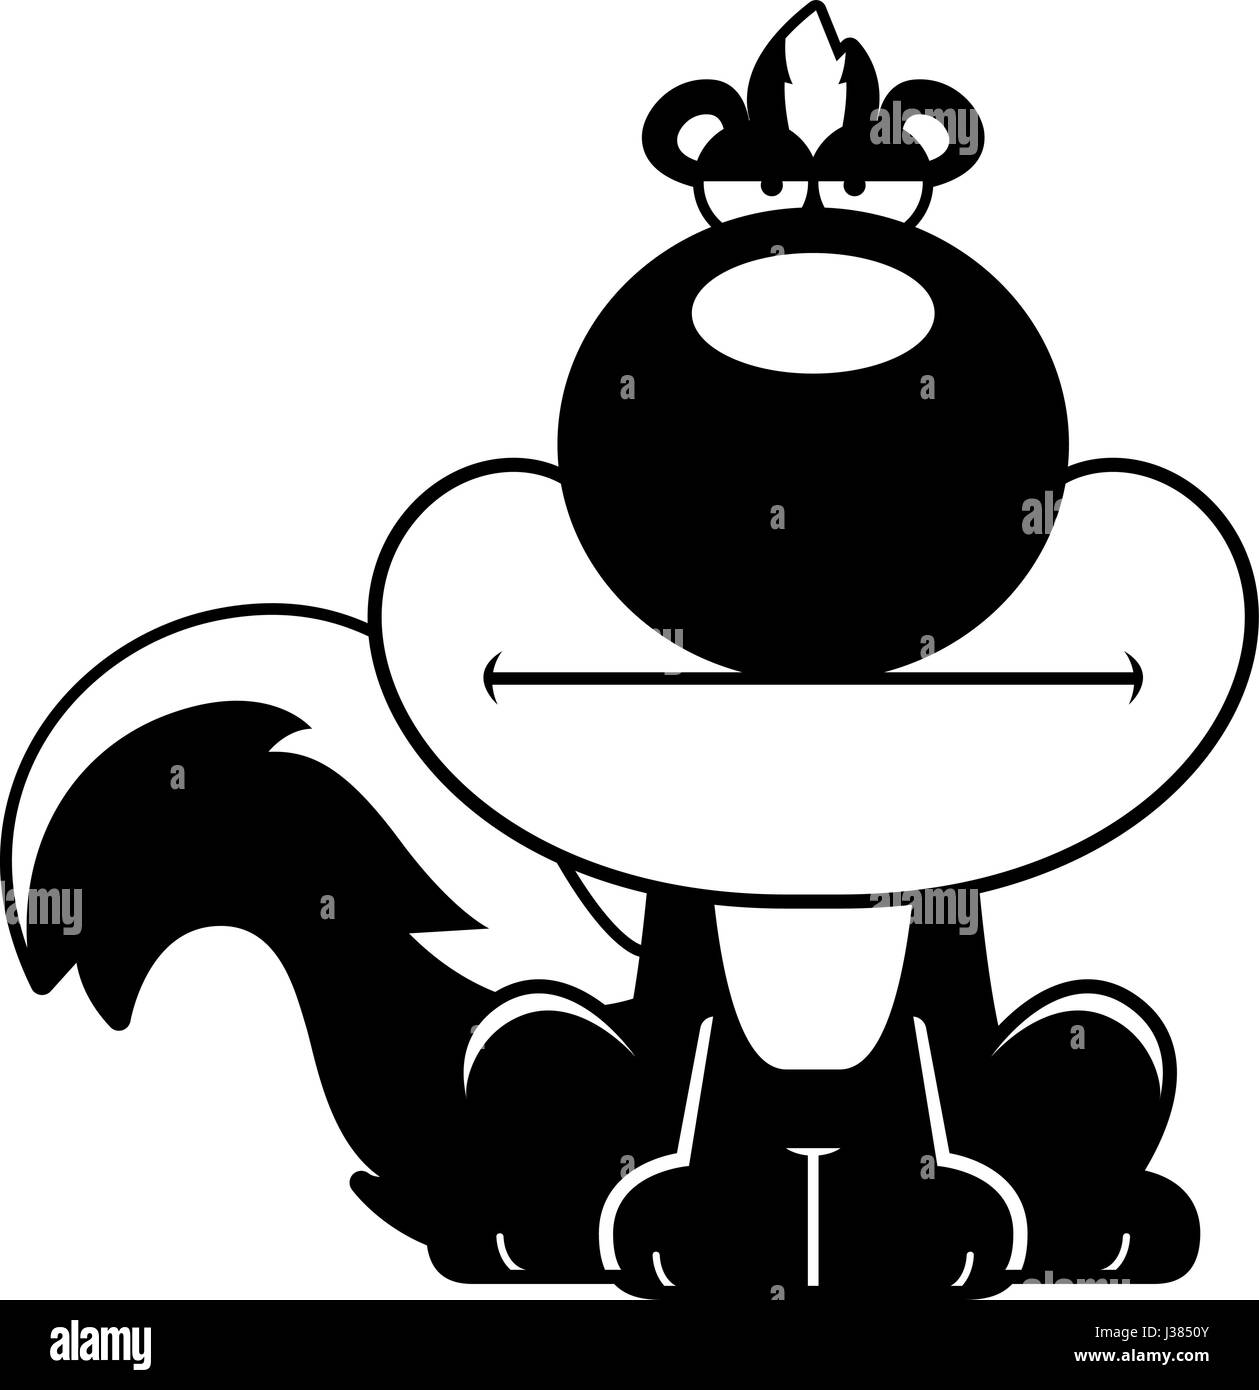 Eine Karikatur Illustration ein Stinktier mit einem gelangweilten Gesichtsausdruck. Stock Vektor